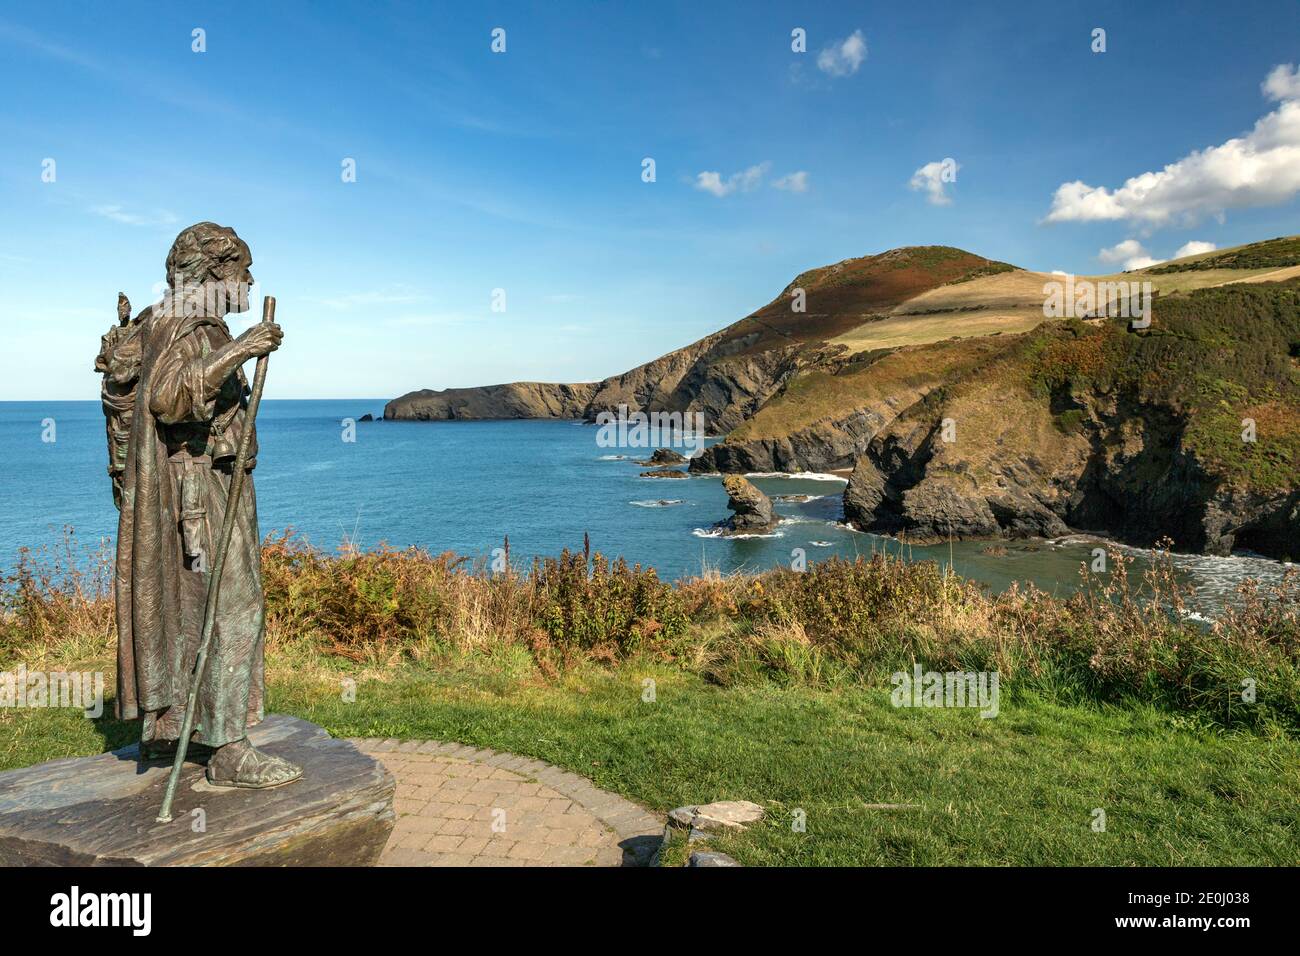 La statue de Saint Carannog garde la vue sur la baie de Llangrannog, avec la dent de Bica et la pointe de Ynys Lochtyn en arrière-plan. Banque D'Images